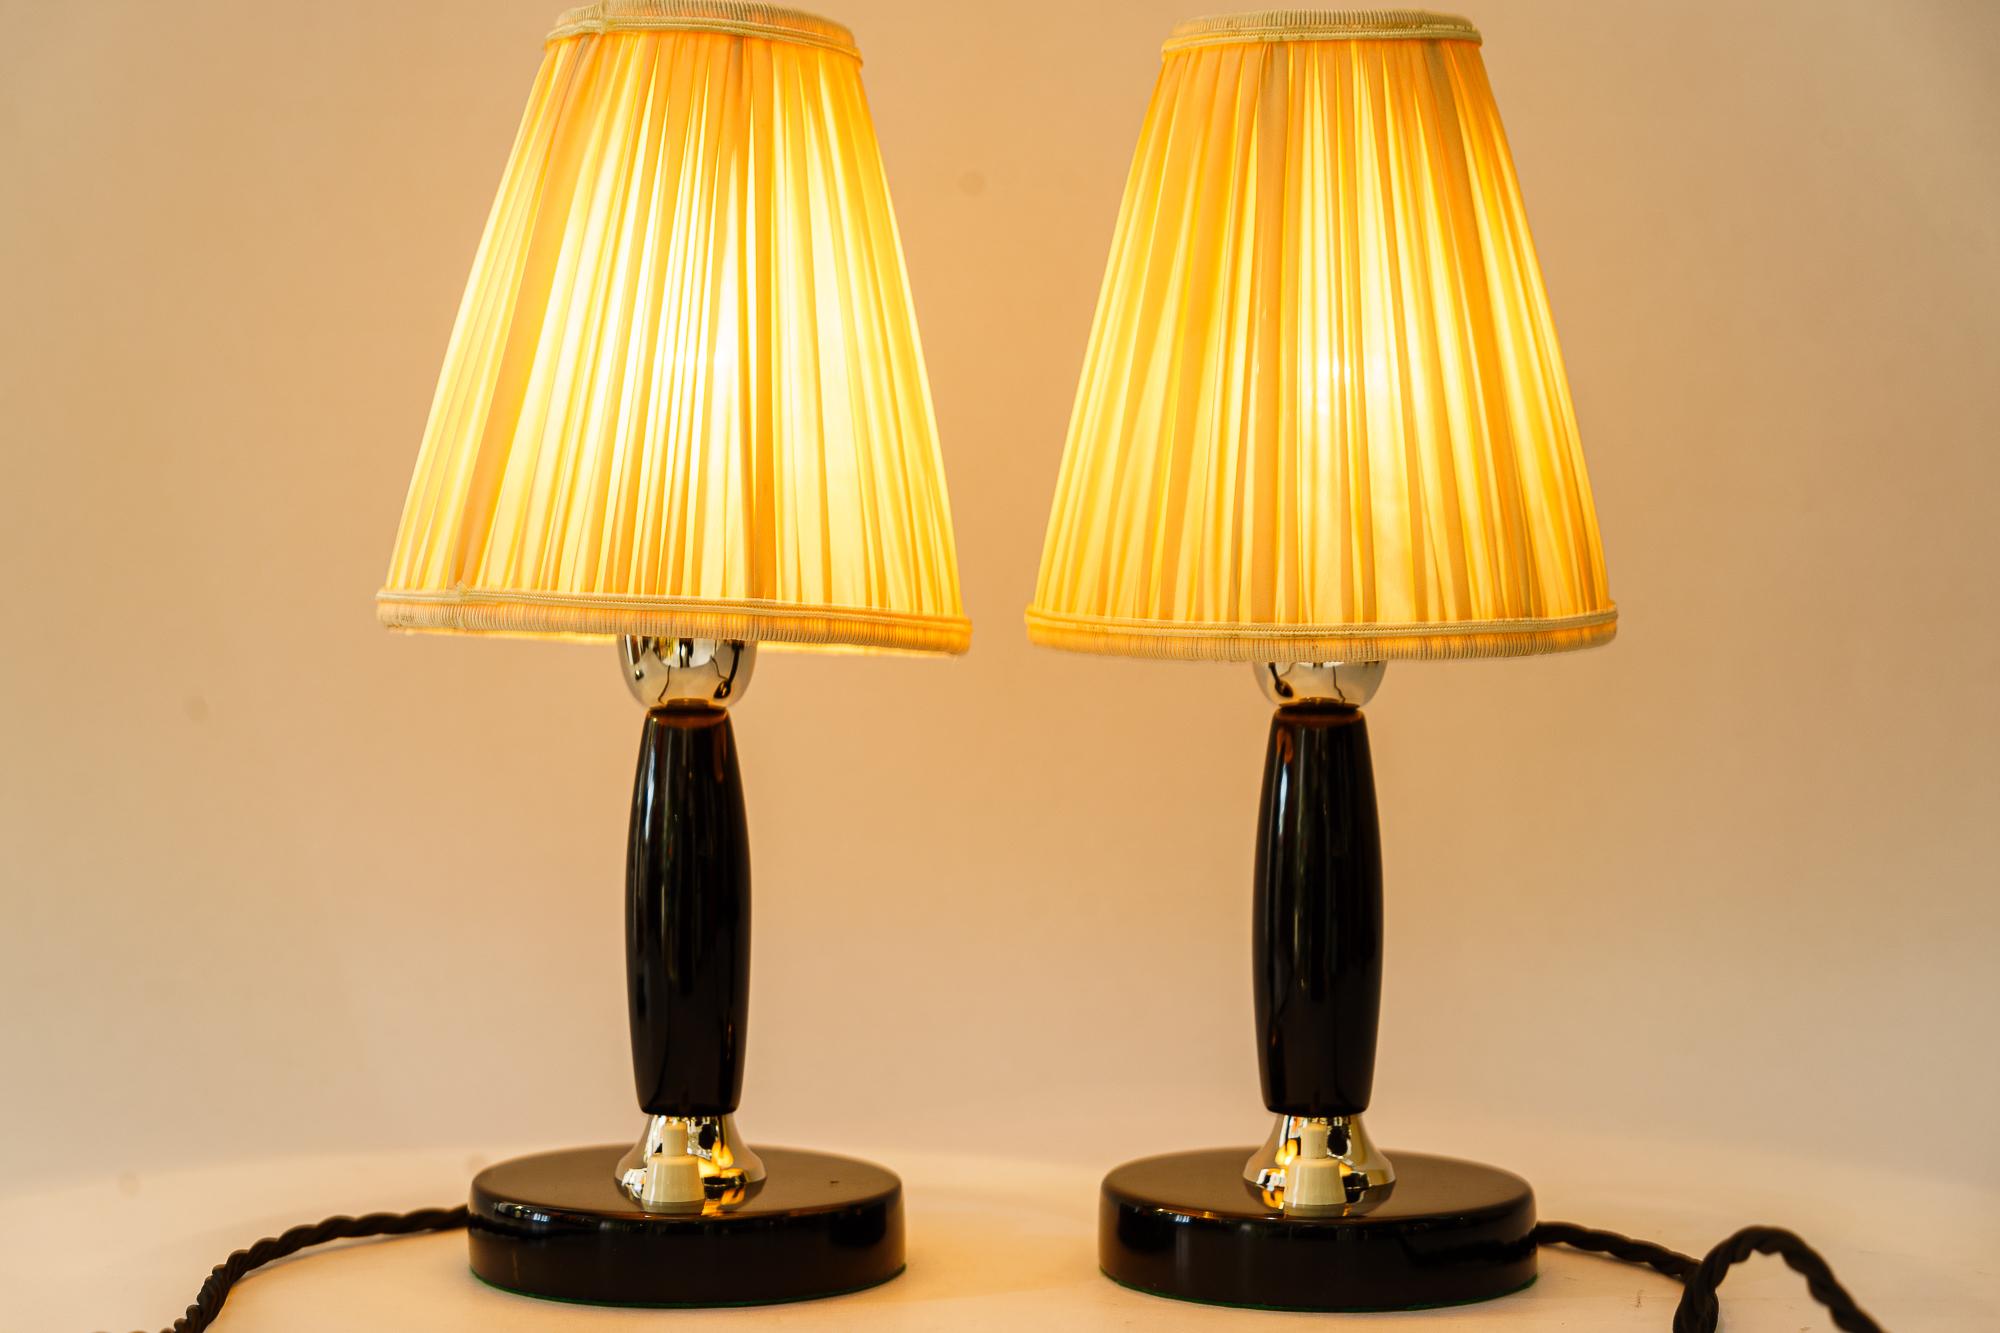 2x Art Deco Holz Tischlampen Wien um 1930er Jahre und Stoffschirm
Vernickelte Teile
Holz geschwärzt und poliert
Die Stoffschirme werden ersetzt ( neu )
Preis des Paares